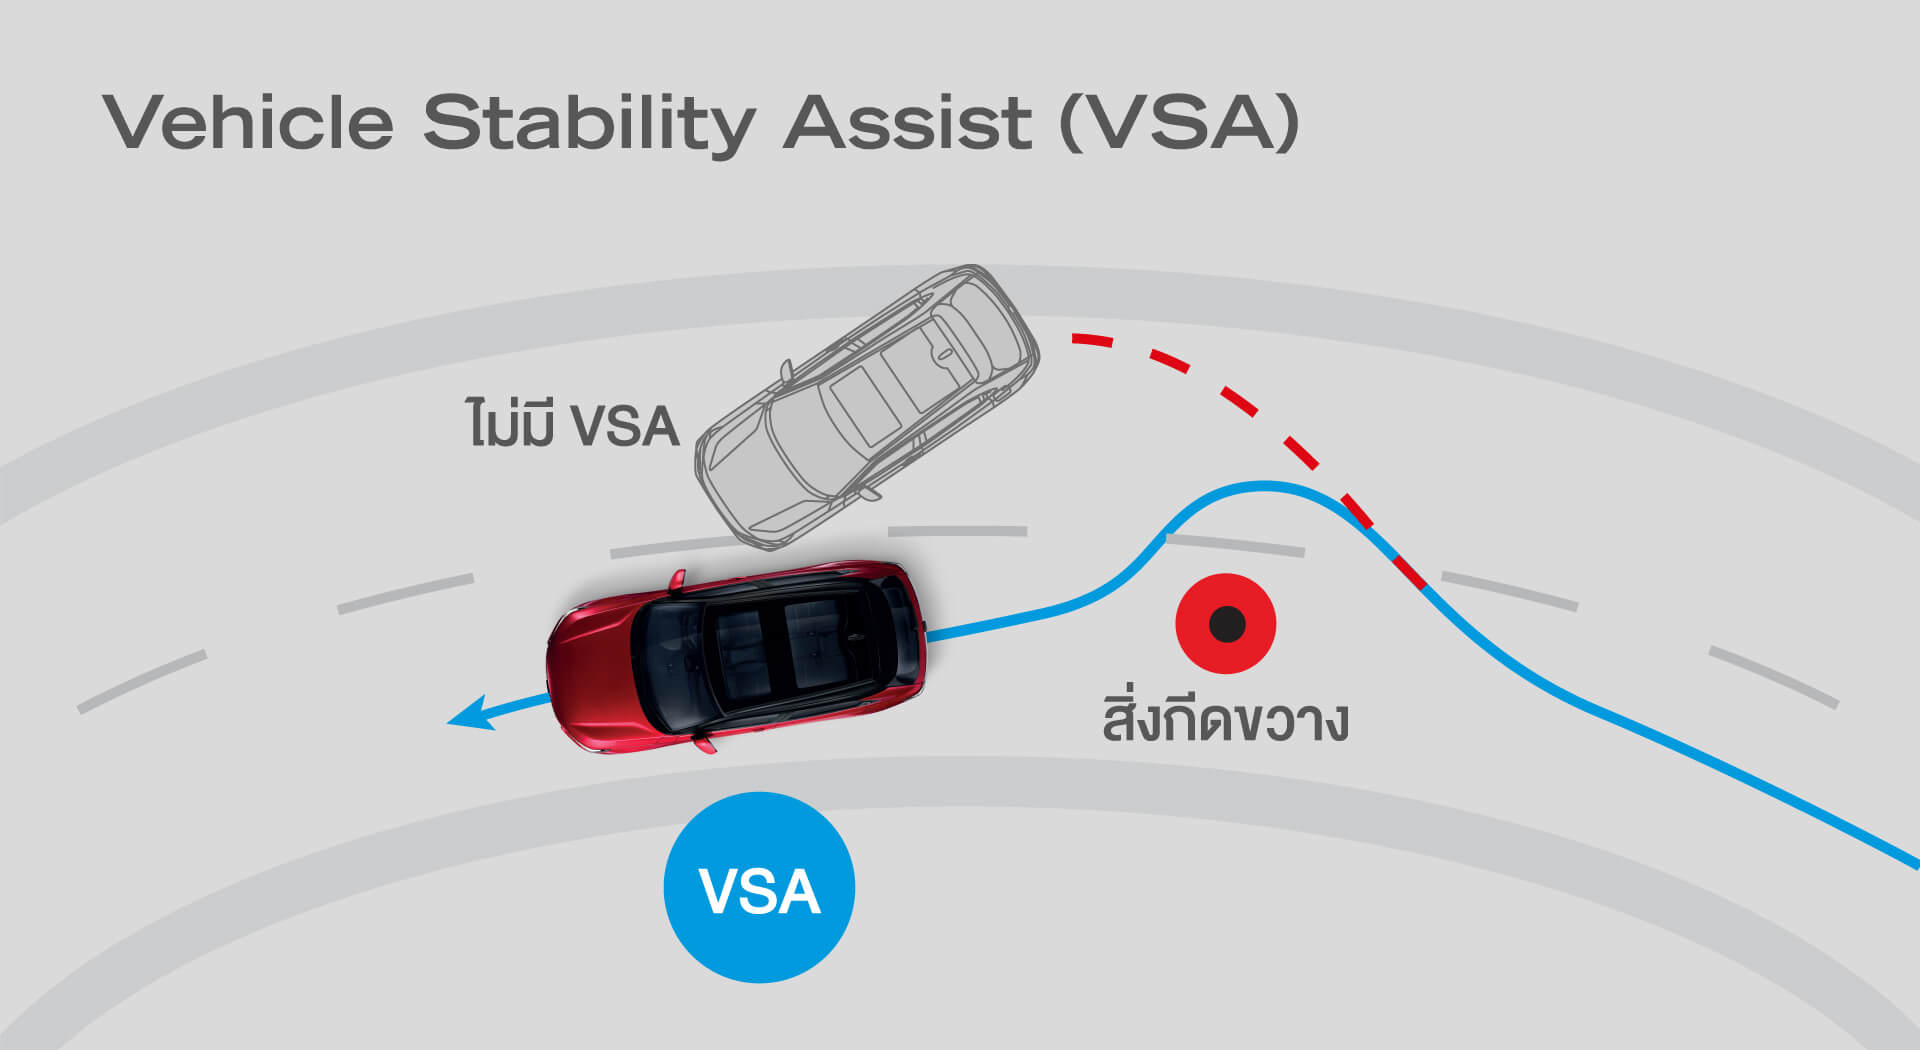 Vehicle Stability Assist (VSA) ระบบช่วยควบคุมการทรงตัวขณะเข้าโค้ง ช่วยการยึดเกาะถนน